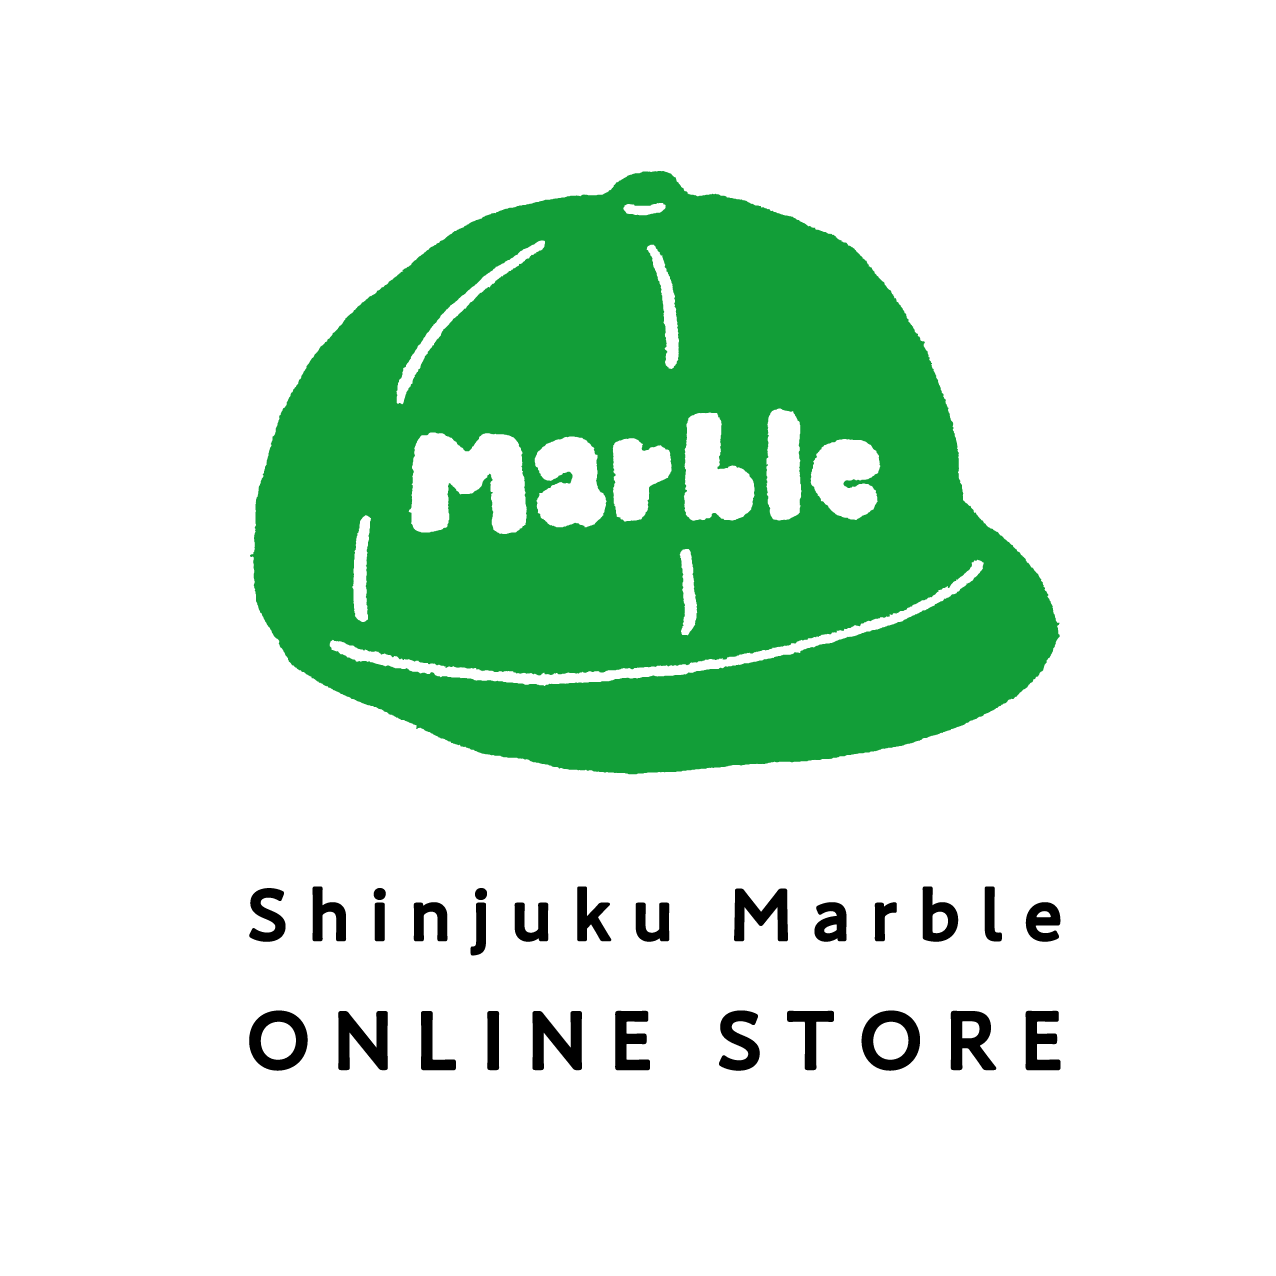 Shinjuku Marble